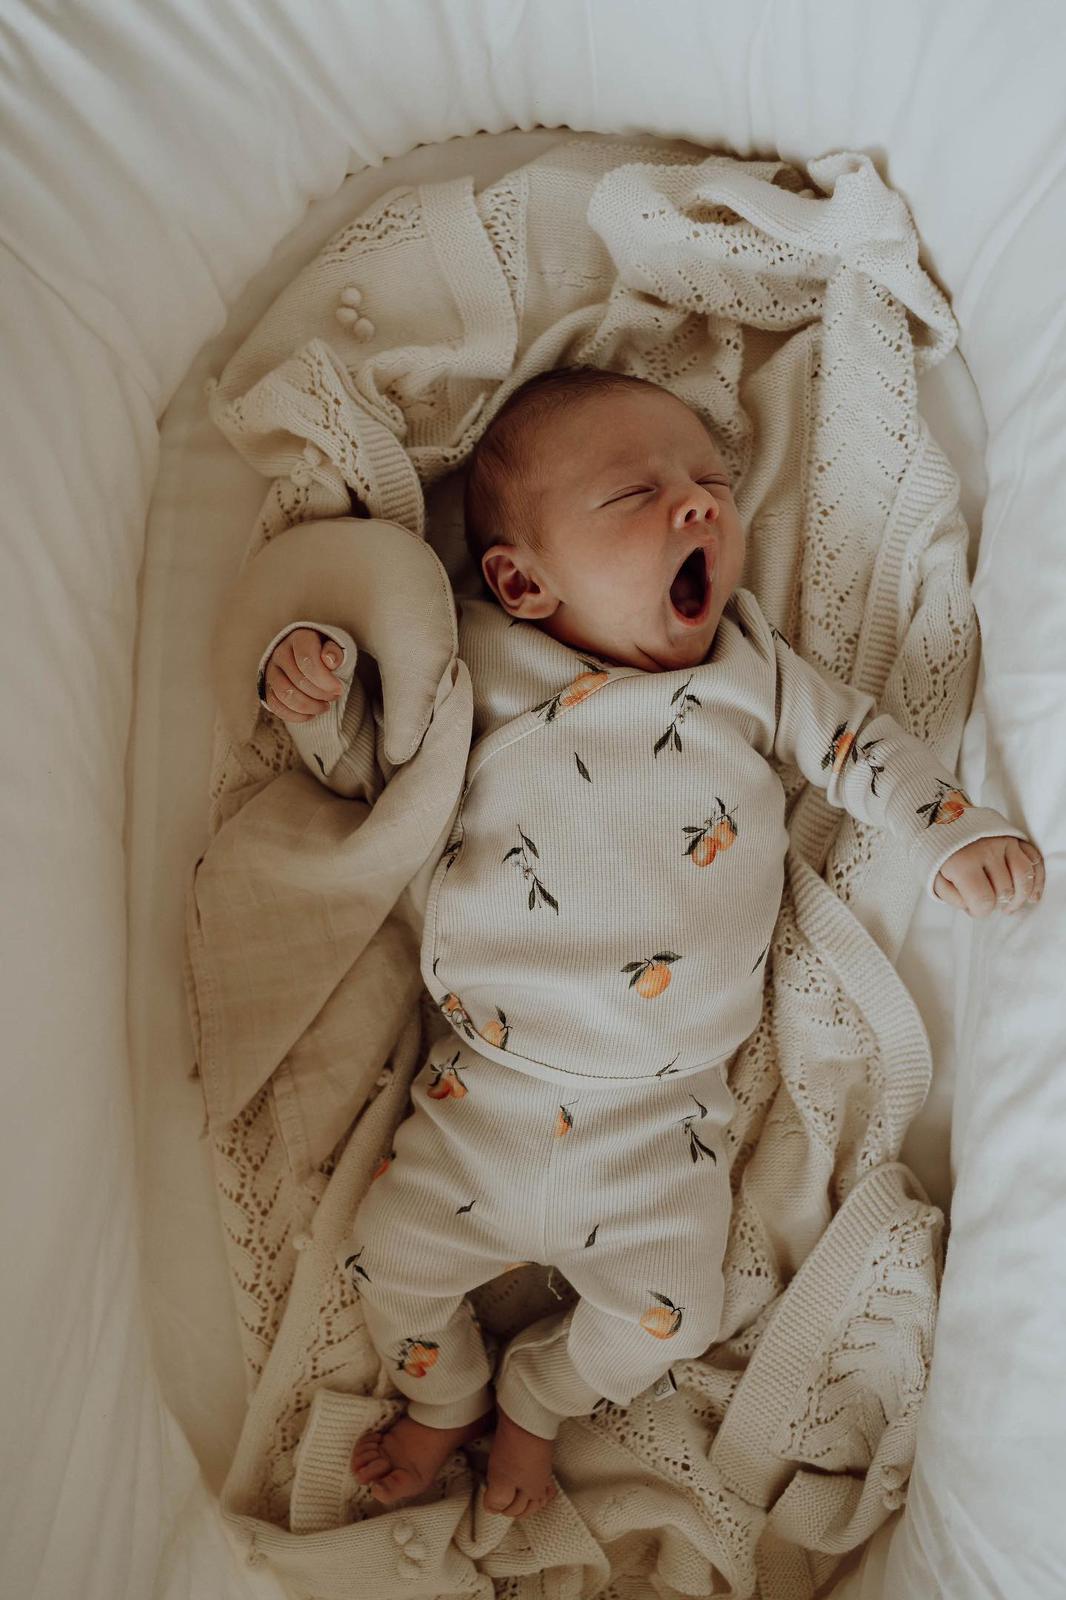 Een vredige pasgeboren baby slaapt heerlijk, ingebakerd in een Osman Overslagshirt Oranjebeige met een zacht patroon, dat rust en onschuld uitstraalt. De inbakerdoek is gemaakt van OEKO-TEX katoen.